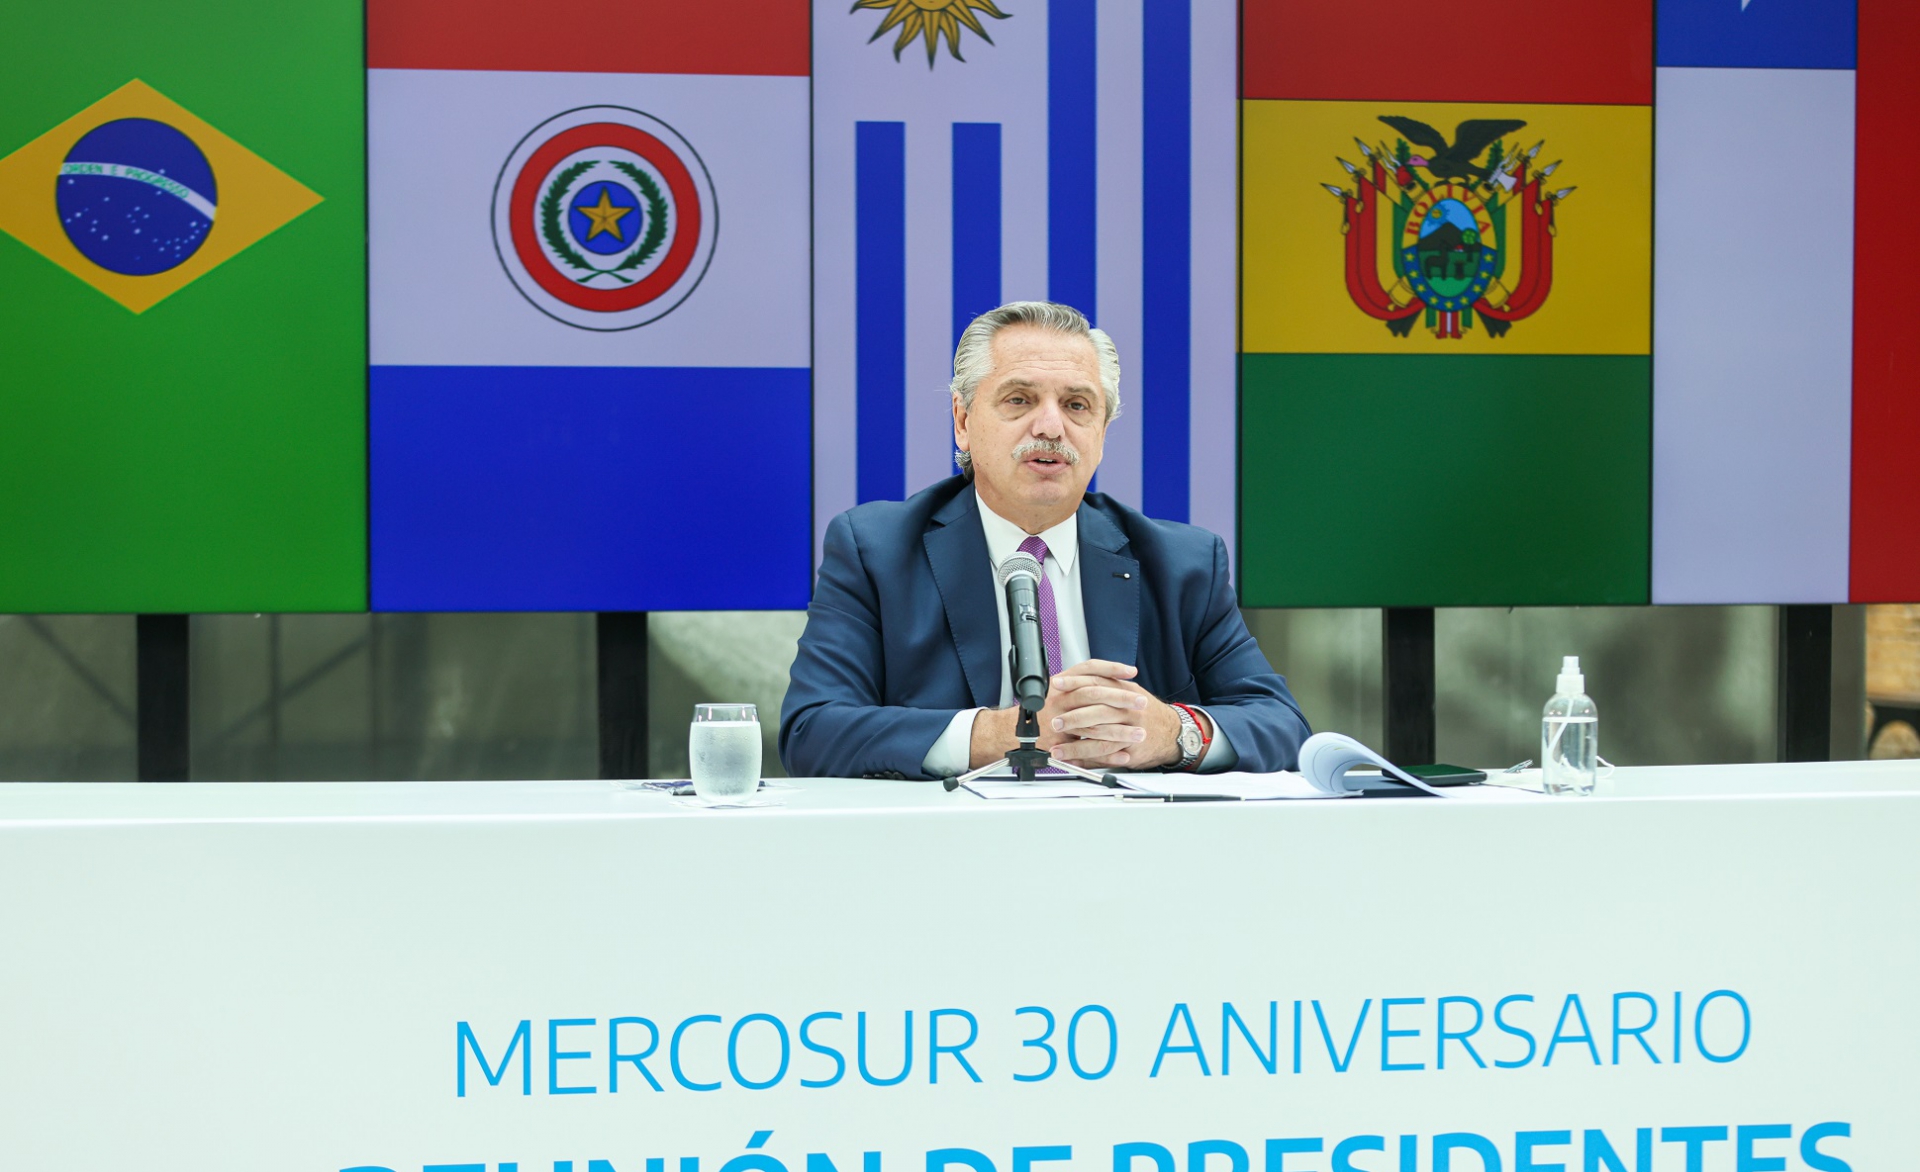 <p>El presidente argentino Alberto Fernández participa de la cumbre de aniversario de Mercosur (imagen: Presidencia de Argentina)</p>